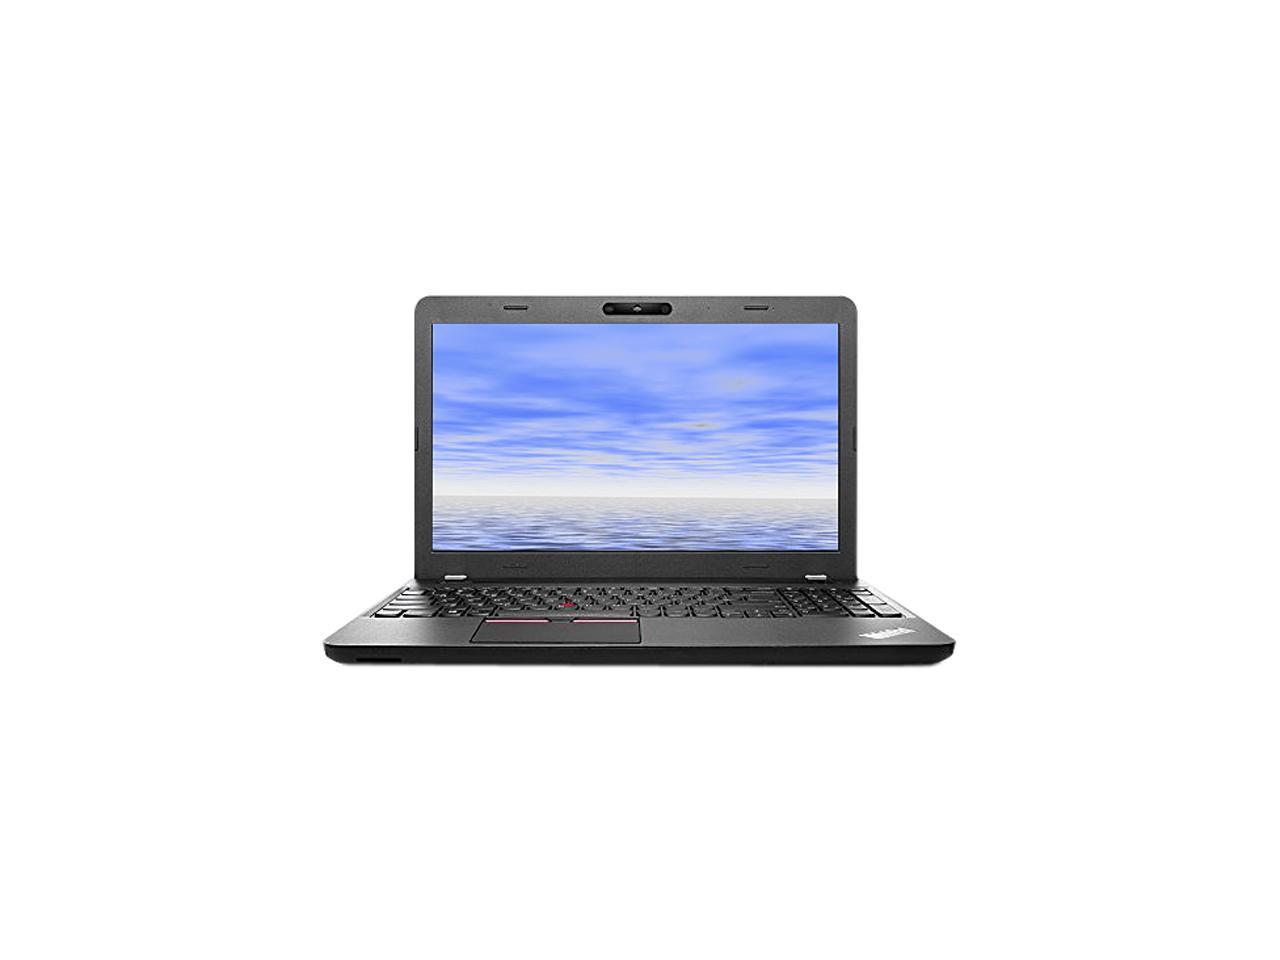 Lenovo ThinkPad E550 Black - Notebook | Alza.cz